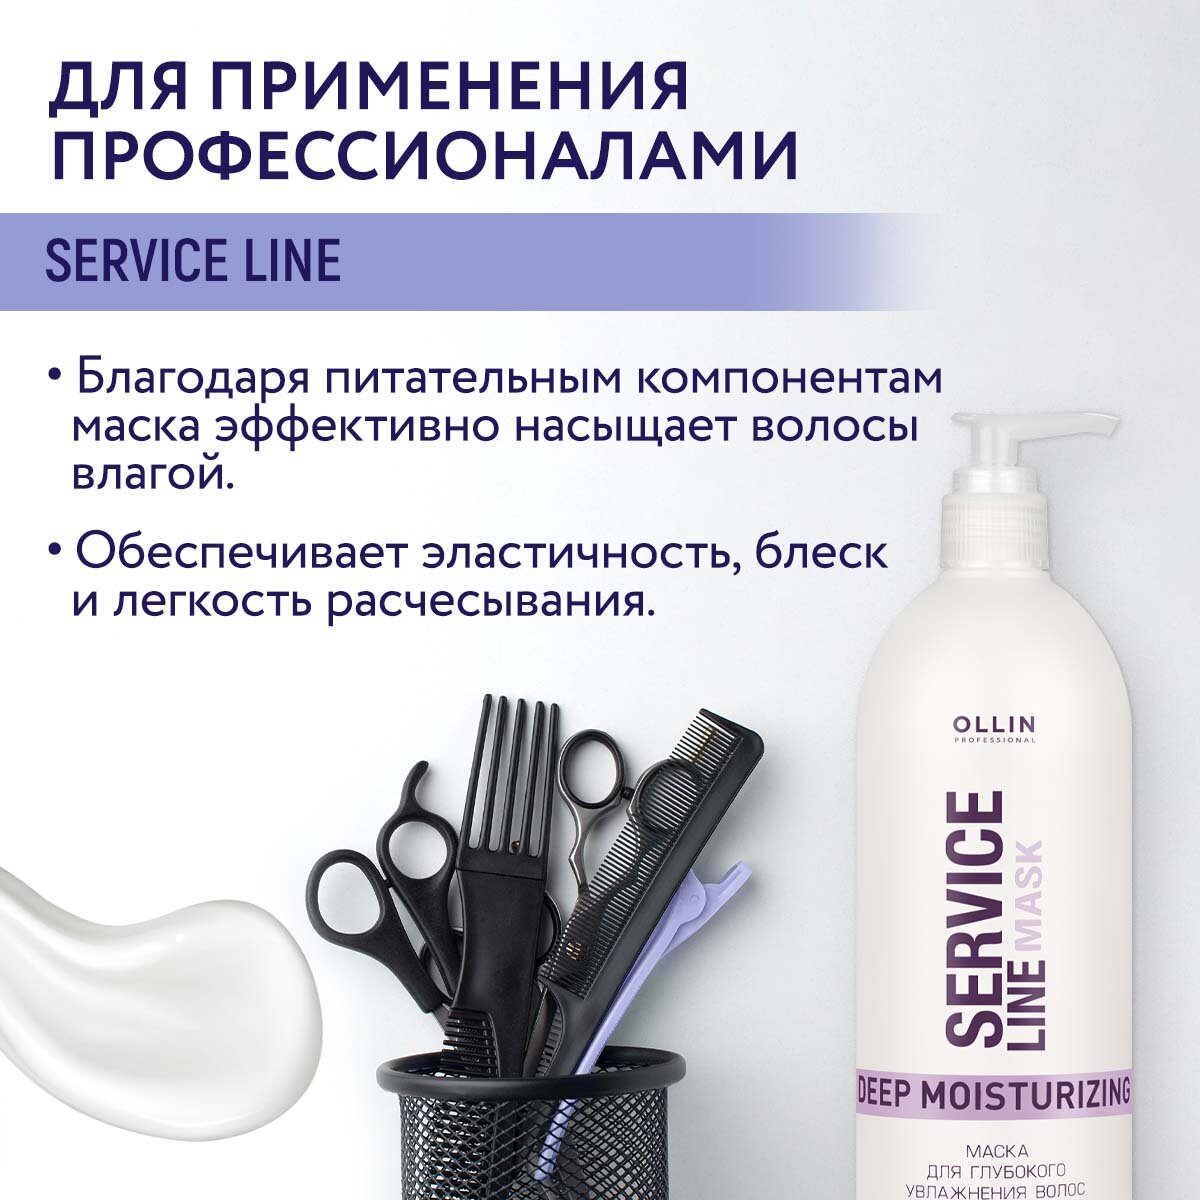 Ollin Professional Маска для глубокого увлажнения волос Deep Moisturizing Mask, 500 мл (Ollin Professional, ) - фото №6